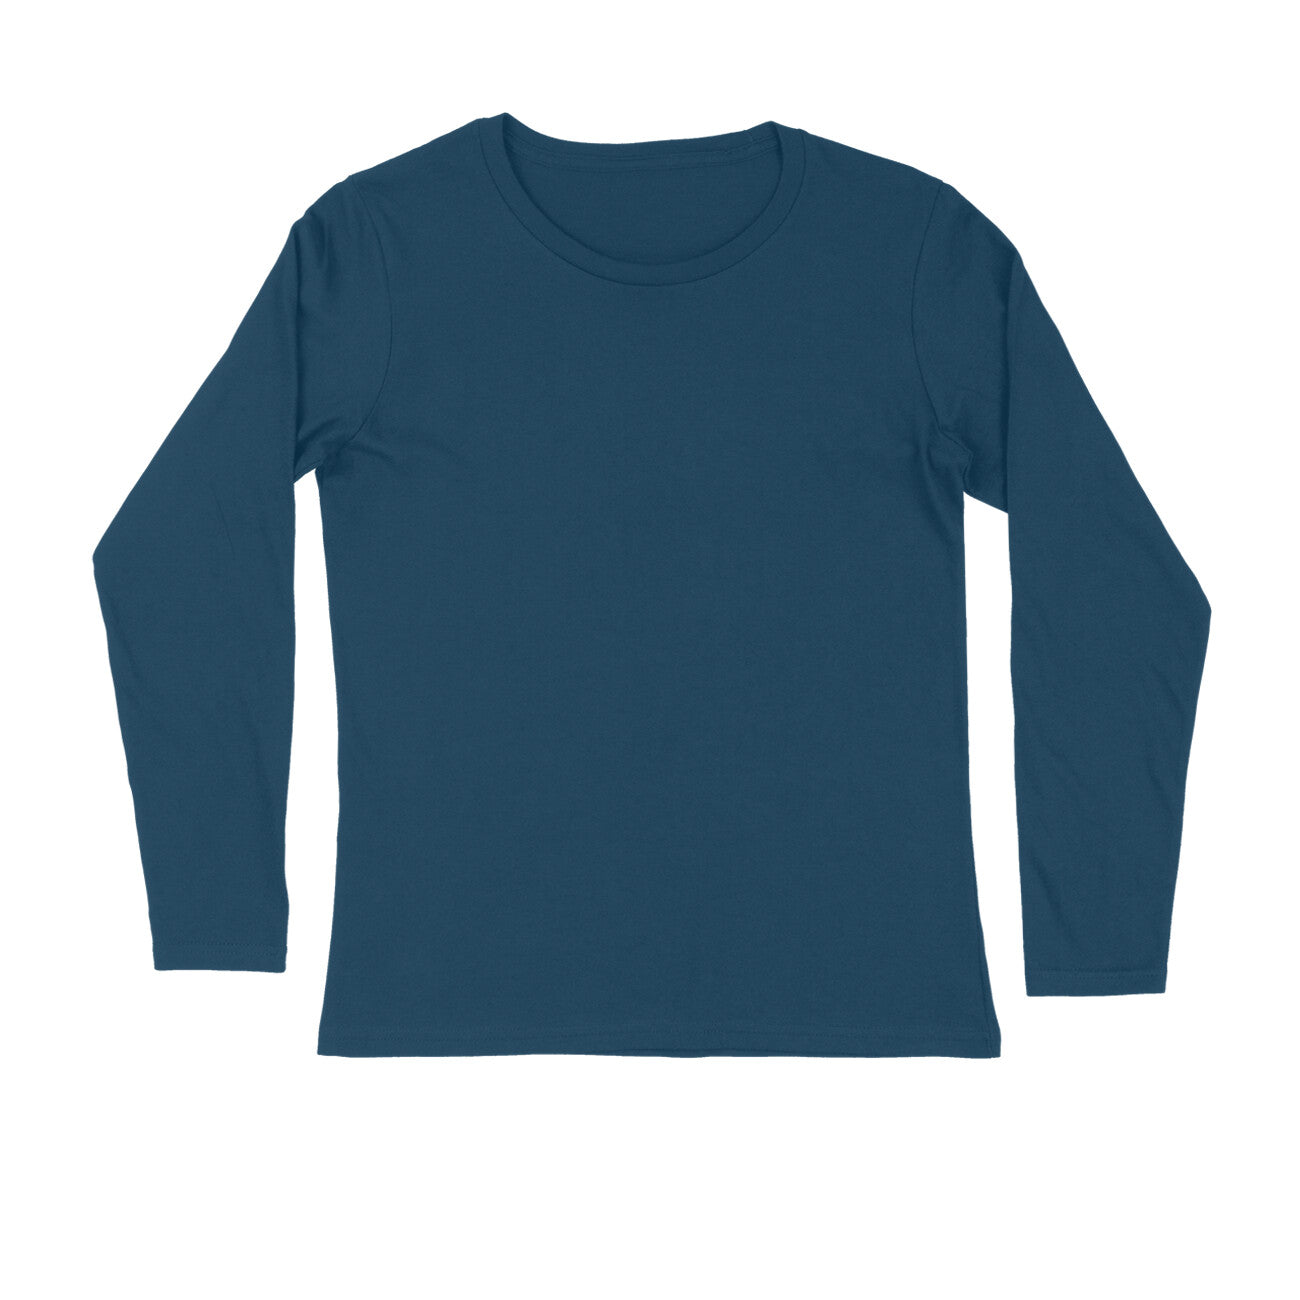 Men's Navy Blue Full Sleeve T-shirt